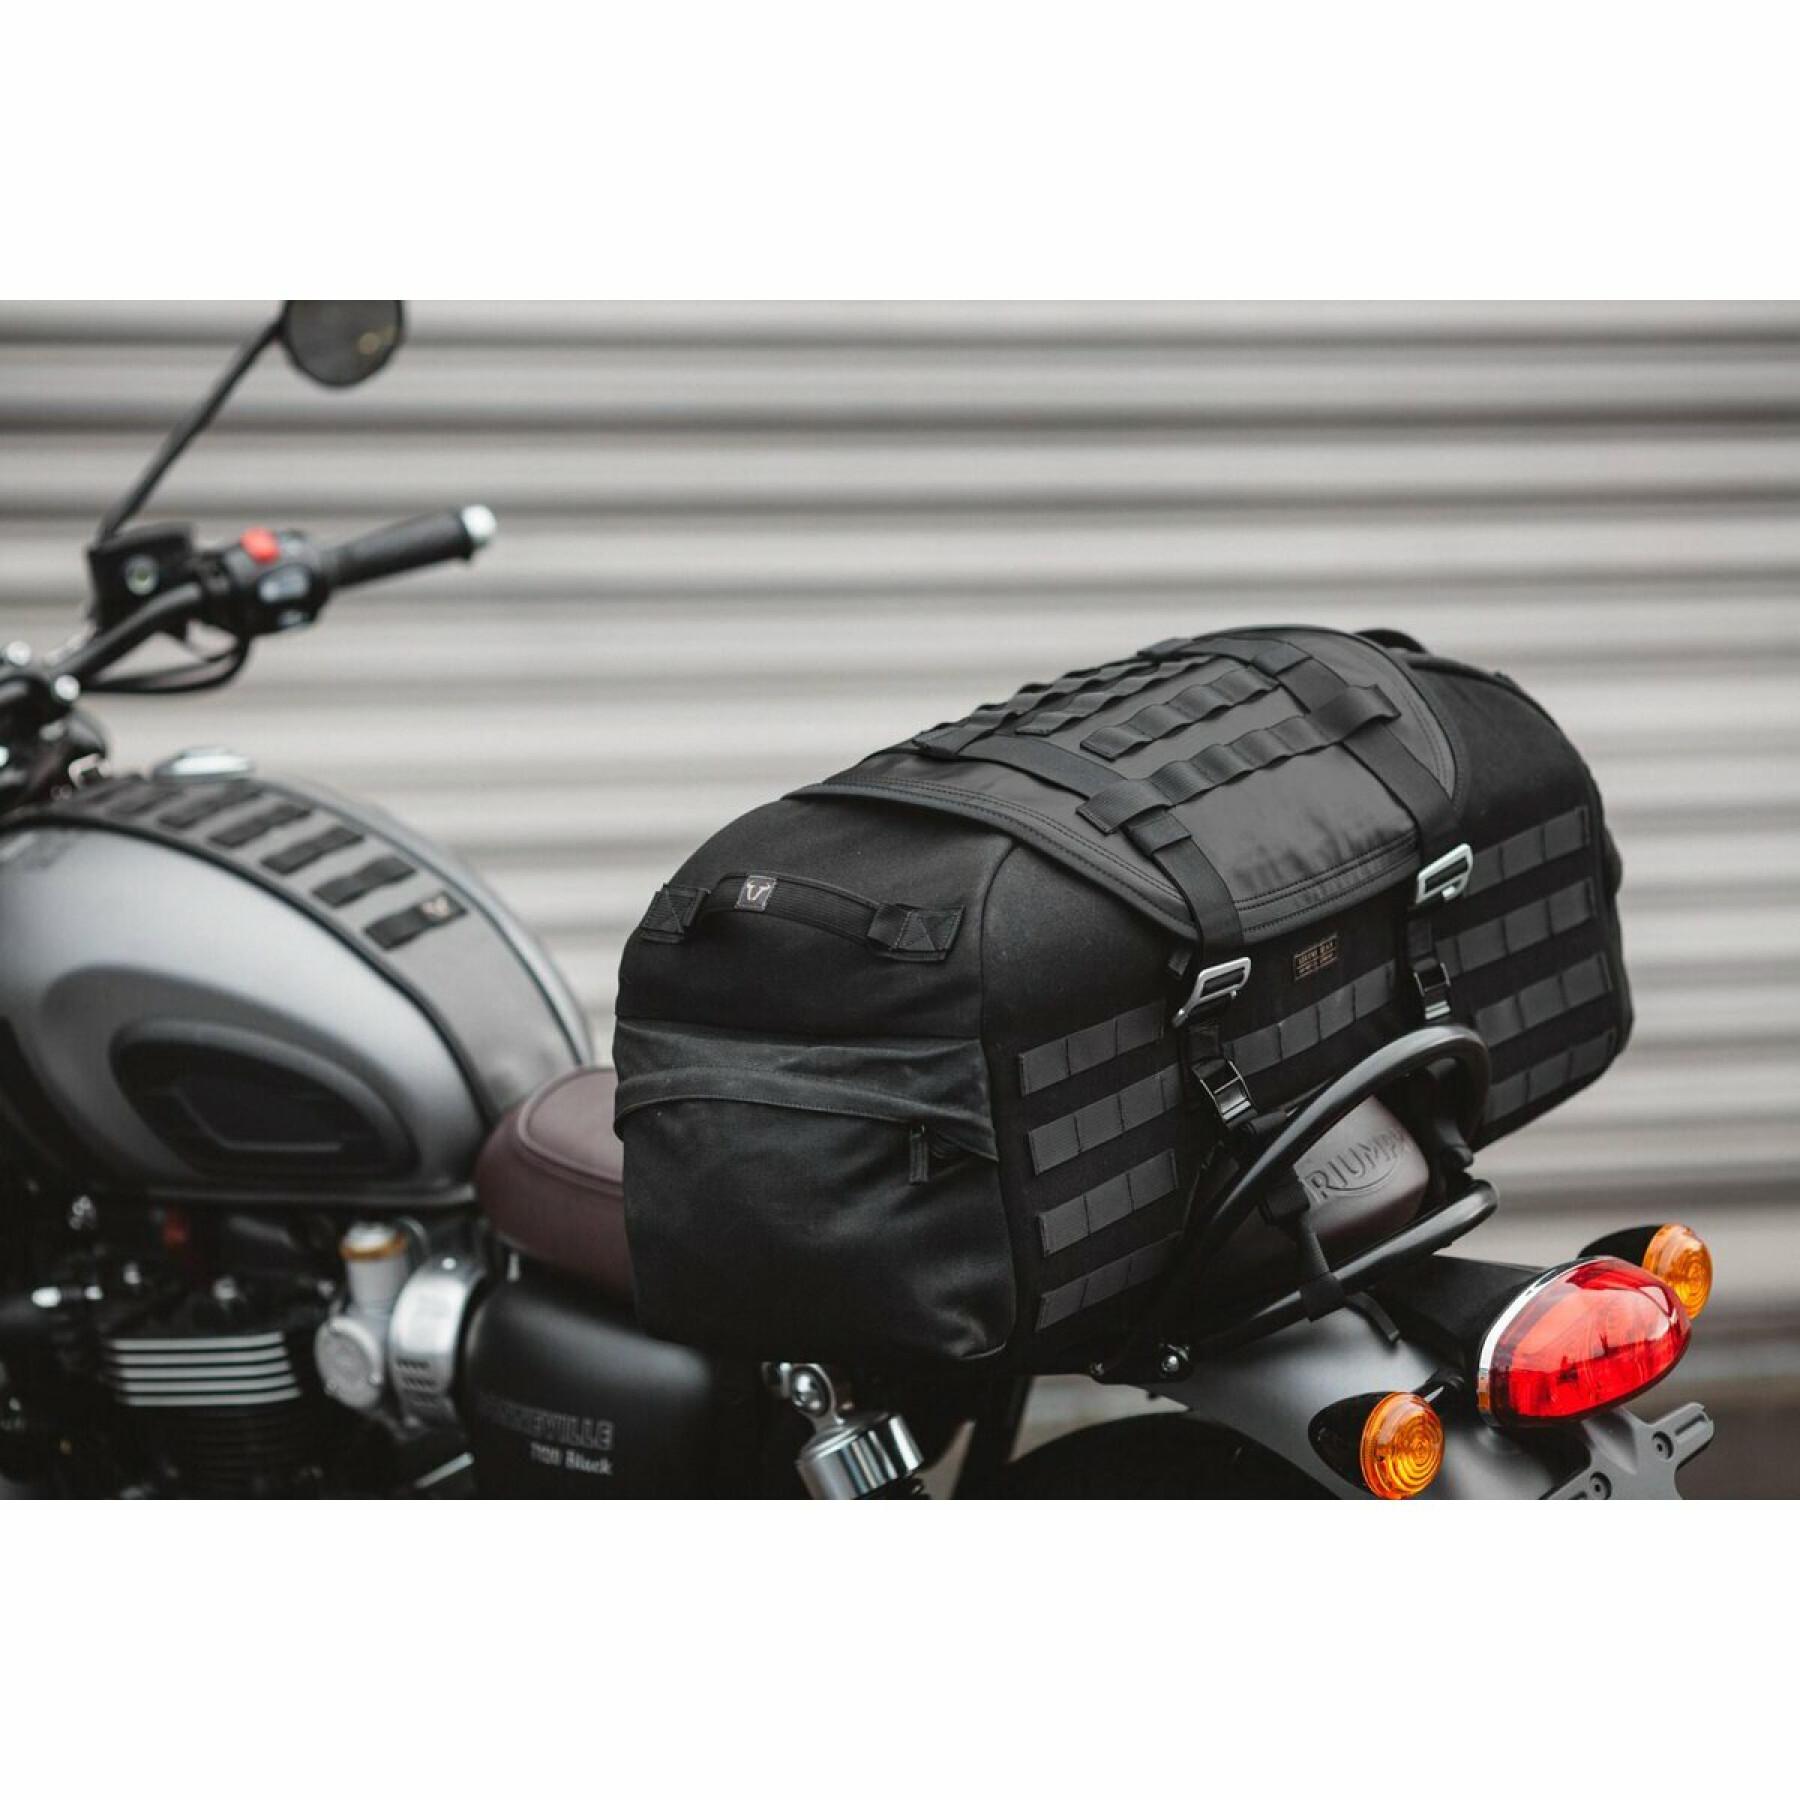 Splashproof saddle bag SW-Motech legend gear LR2